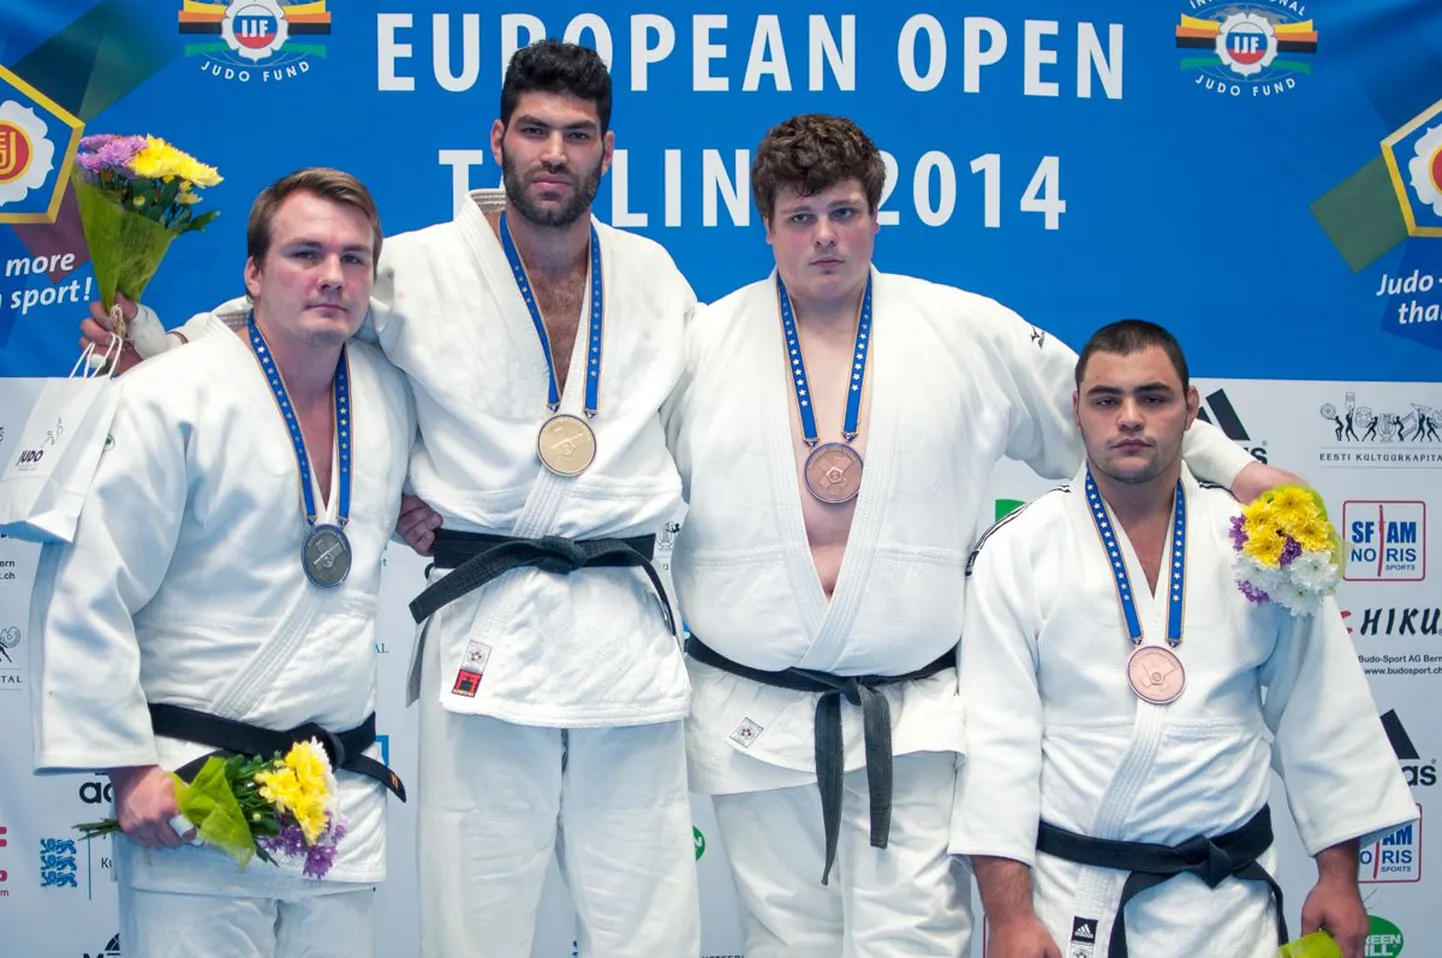 European Openil hõbeda võitnud Juhan Mettis (vasakul) koos konkurentidega.